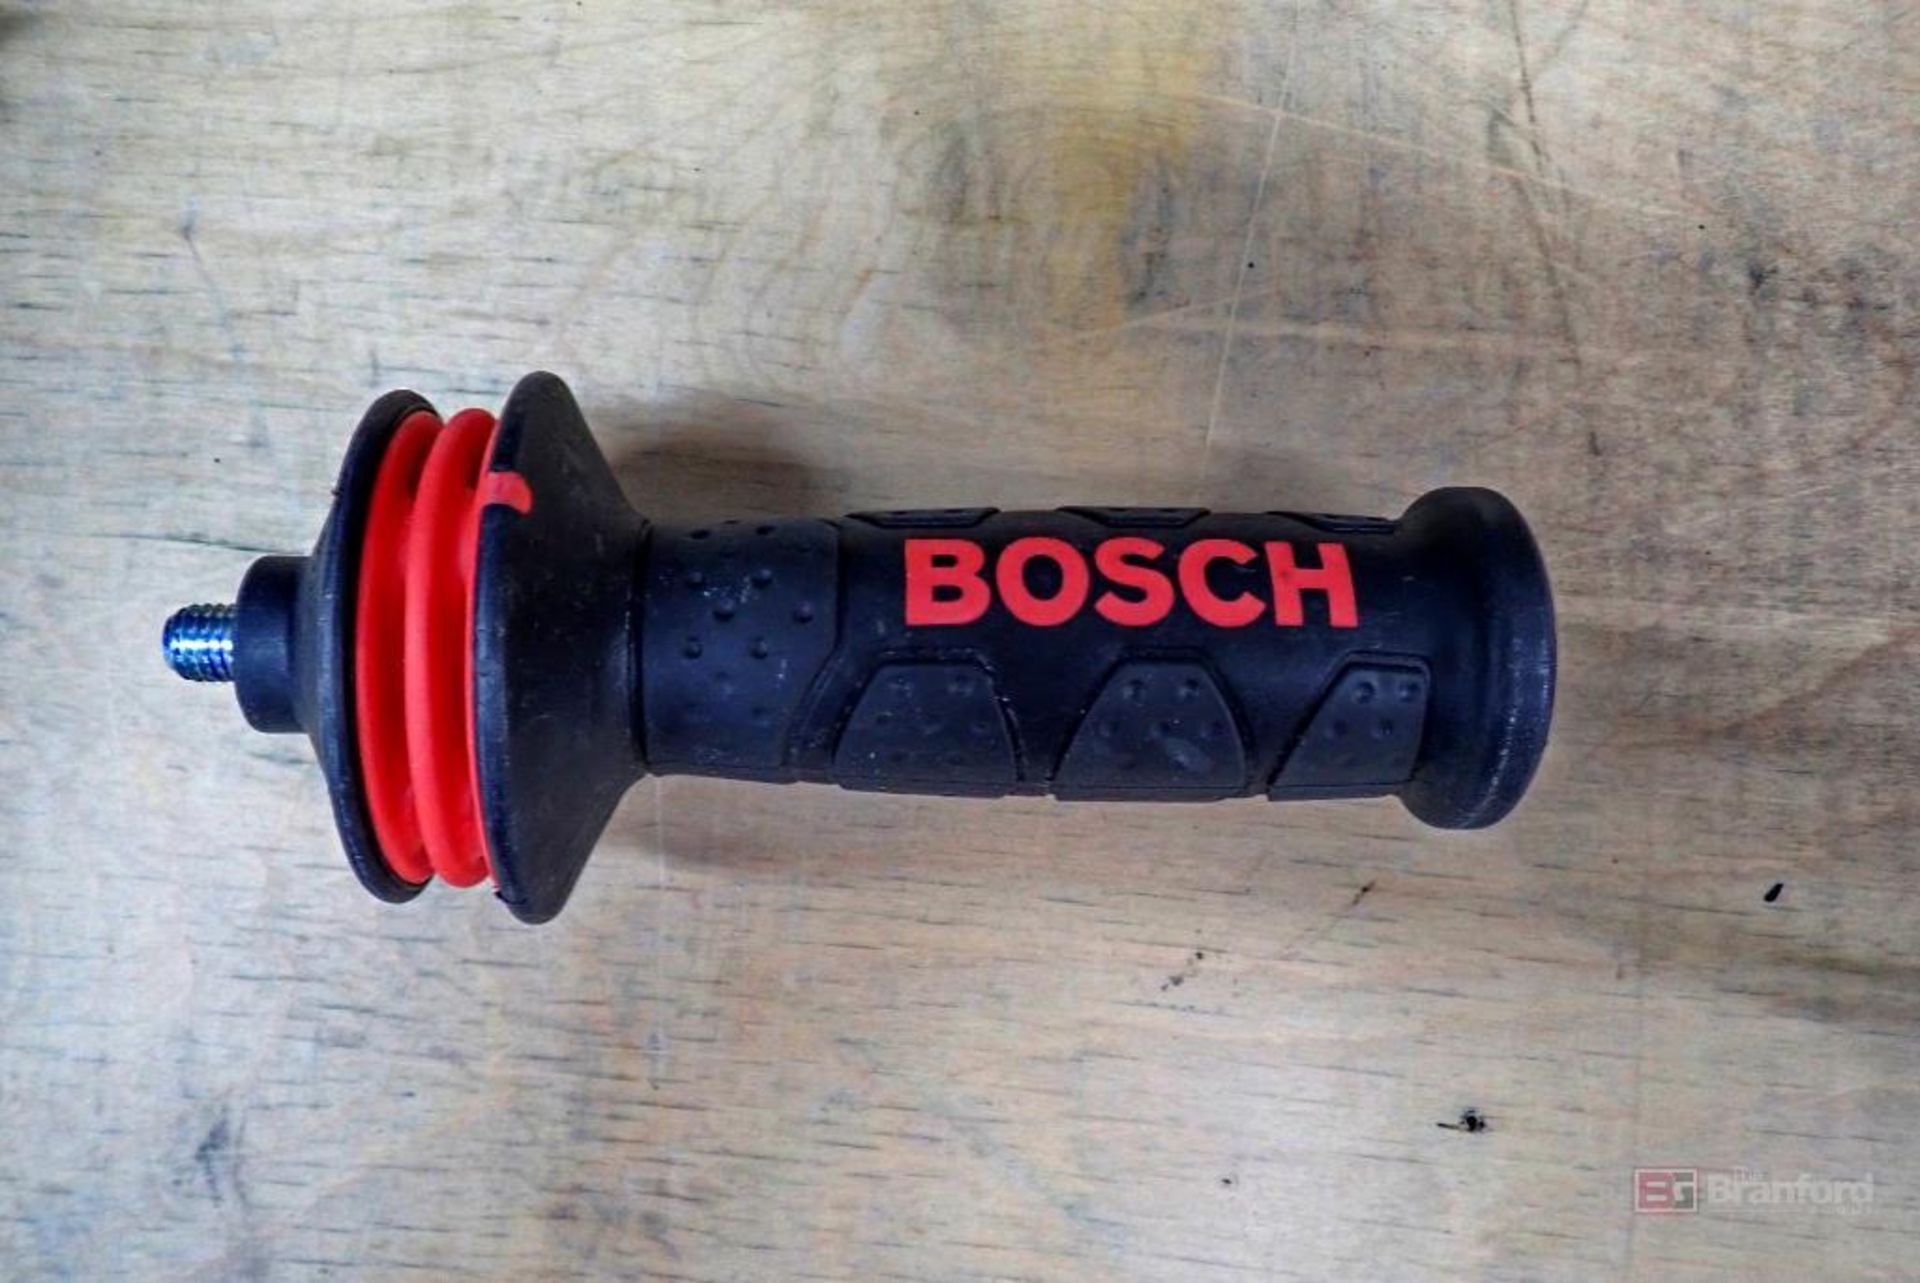 Bosch GWS13-50VSP Angle Grinder - Image 3 of 8